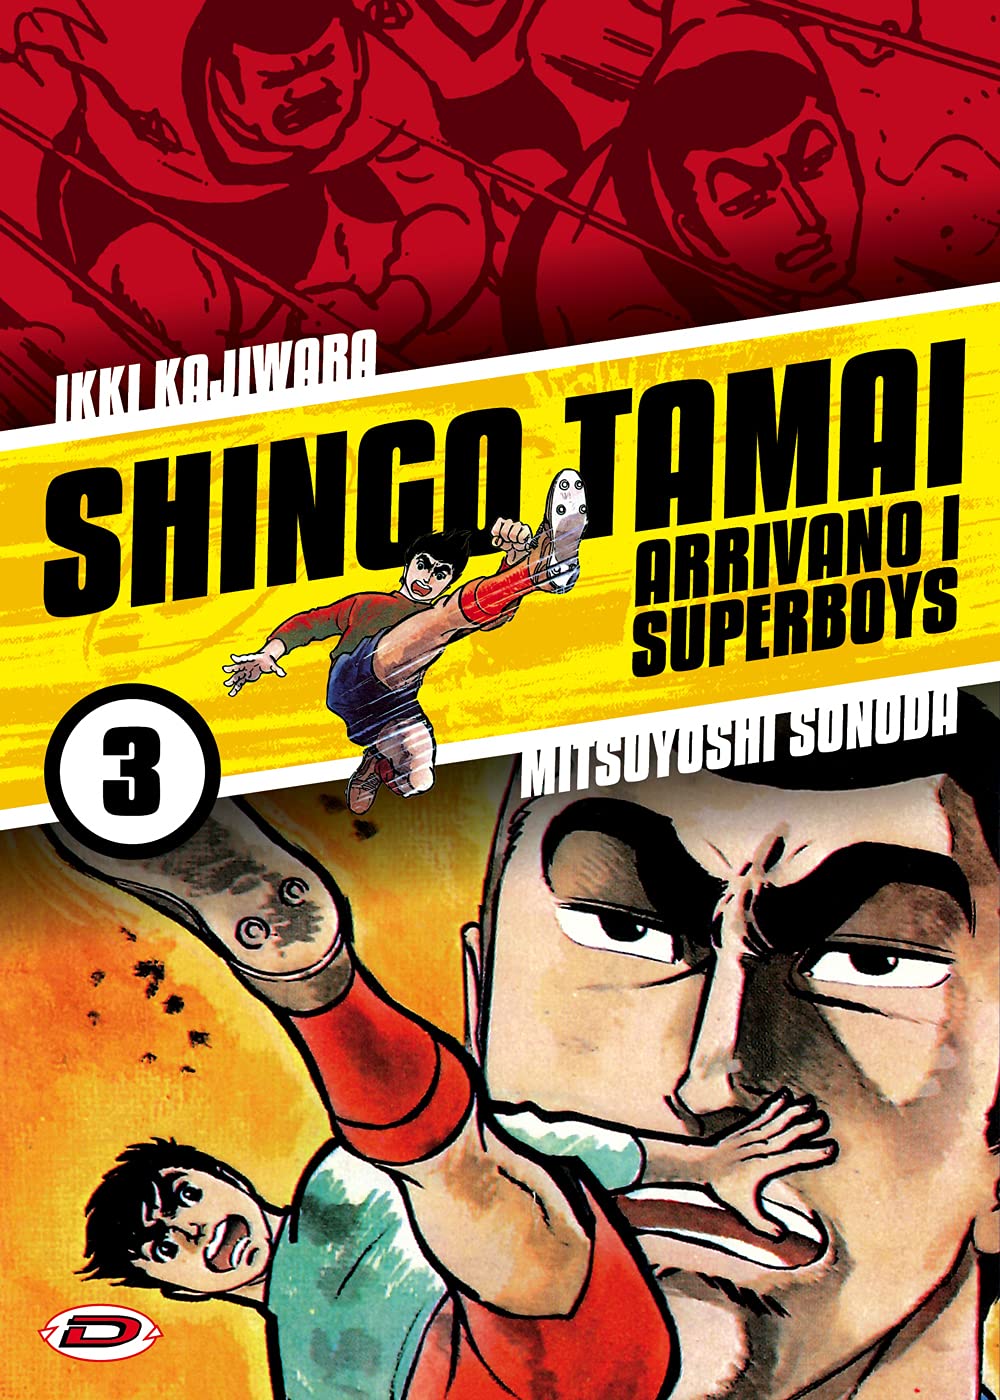 Shingo Tamai: Arrivano i Superboys 3